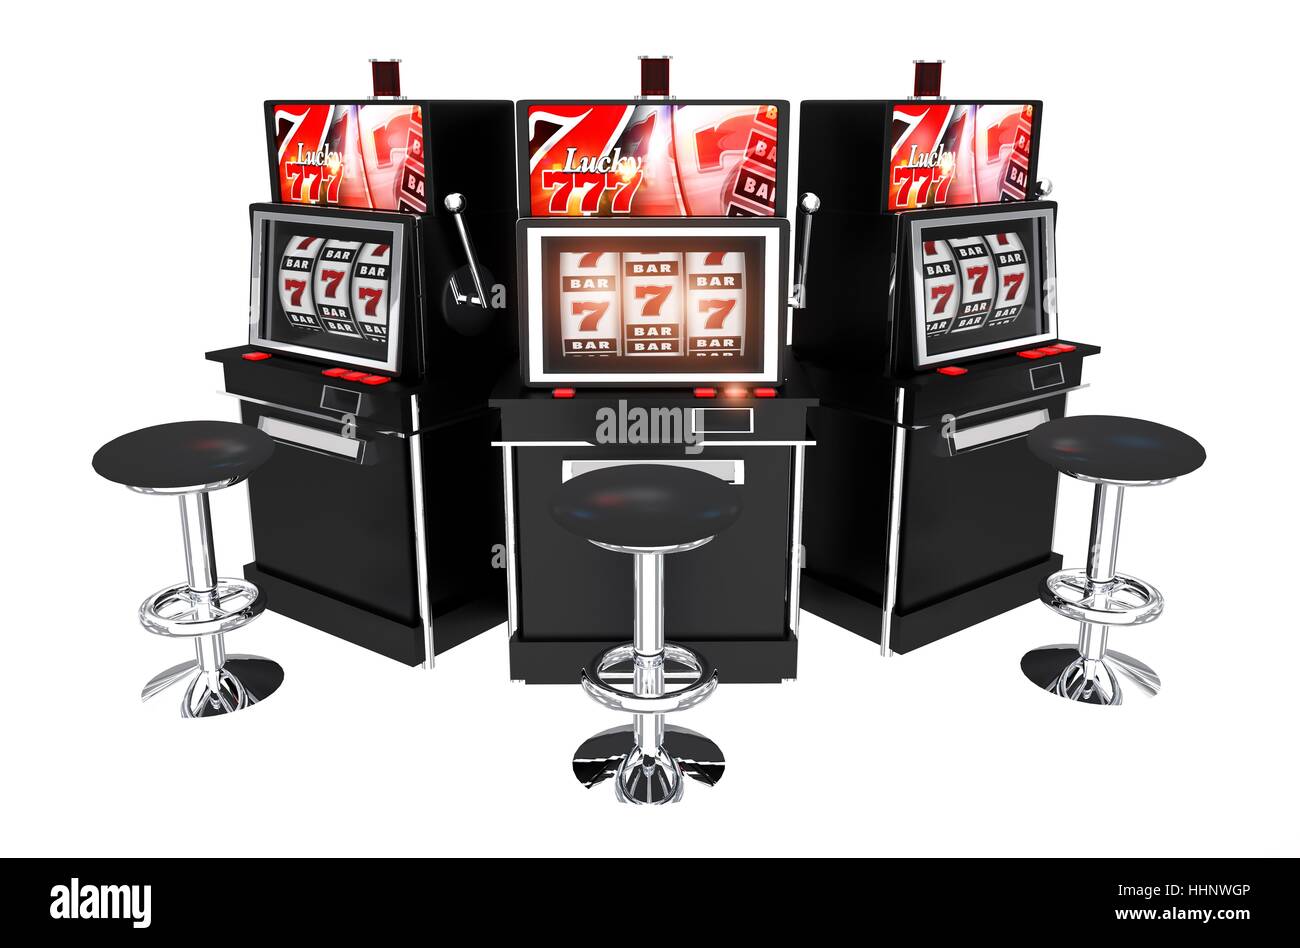 Trois machines à sous Casino isolé sur fond blanc. Les connecteurs 3D Render Illustration. Banque D'Images